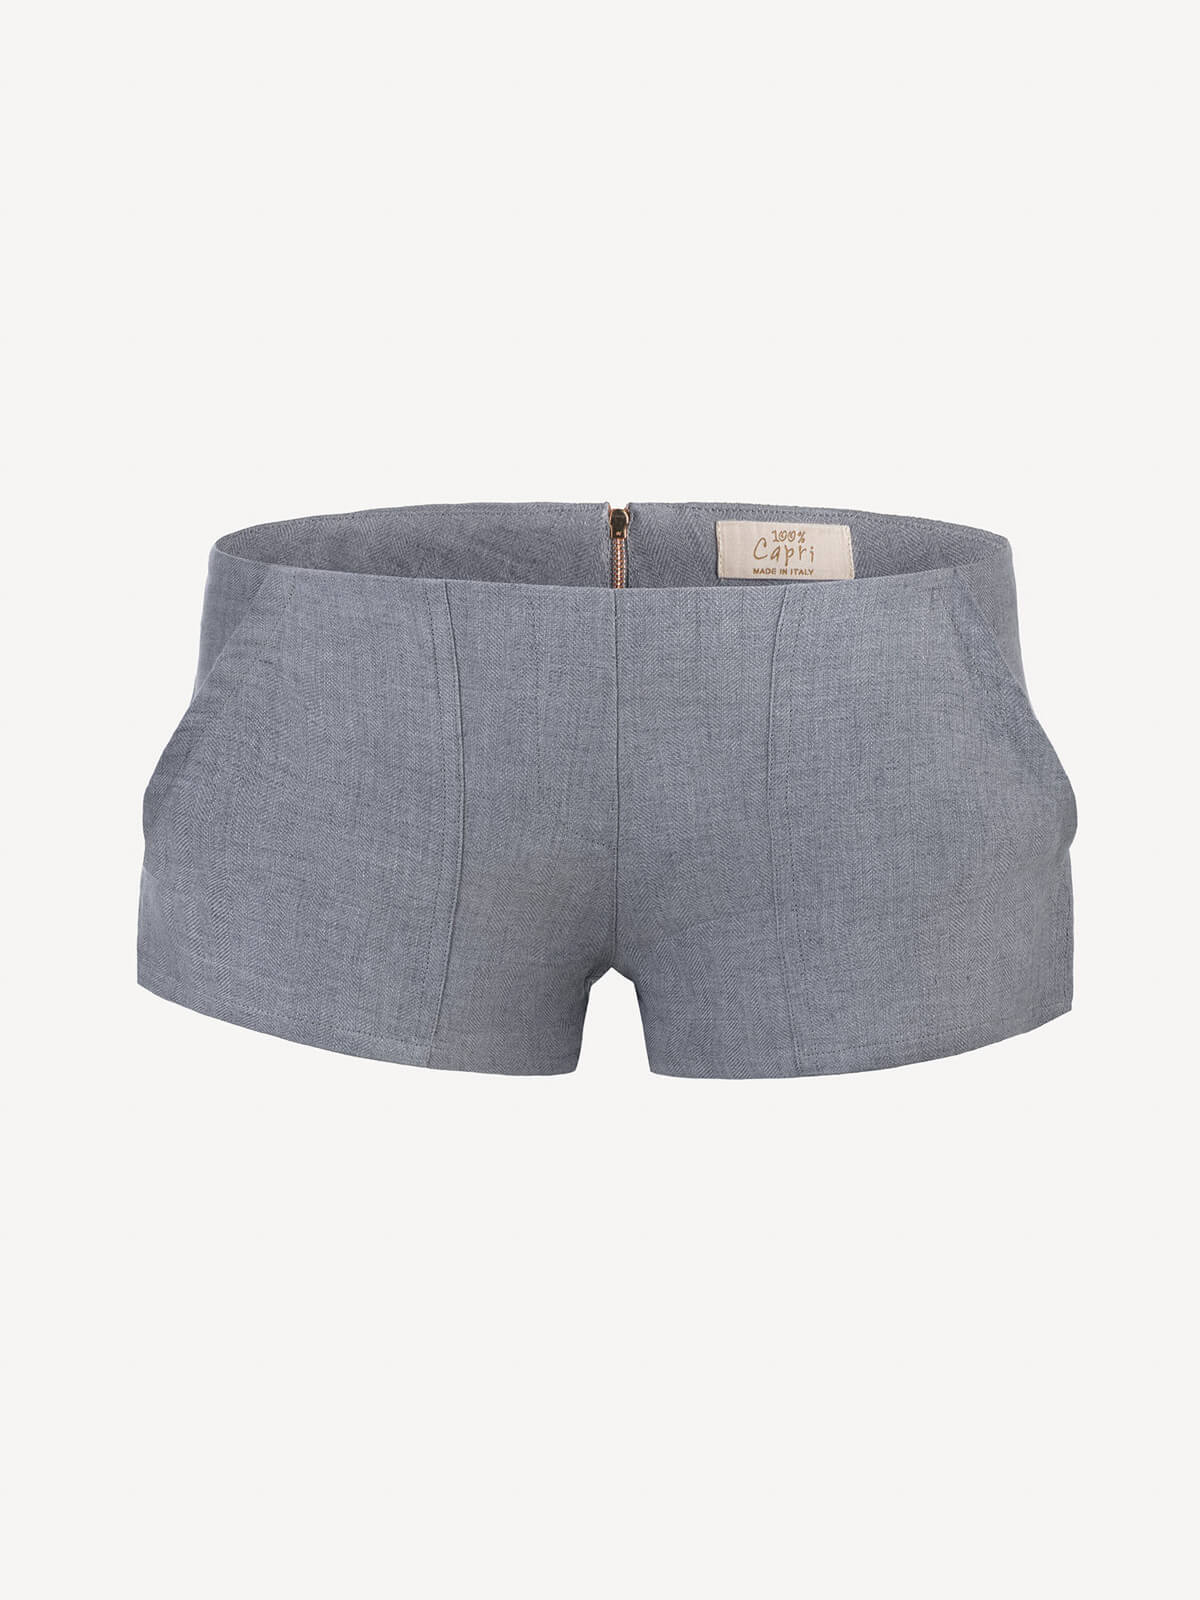 Short linen pants with zip for Woman dark grey color front 100% Capri